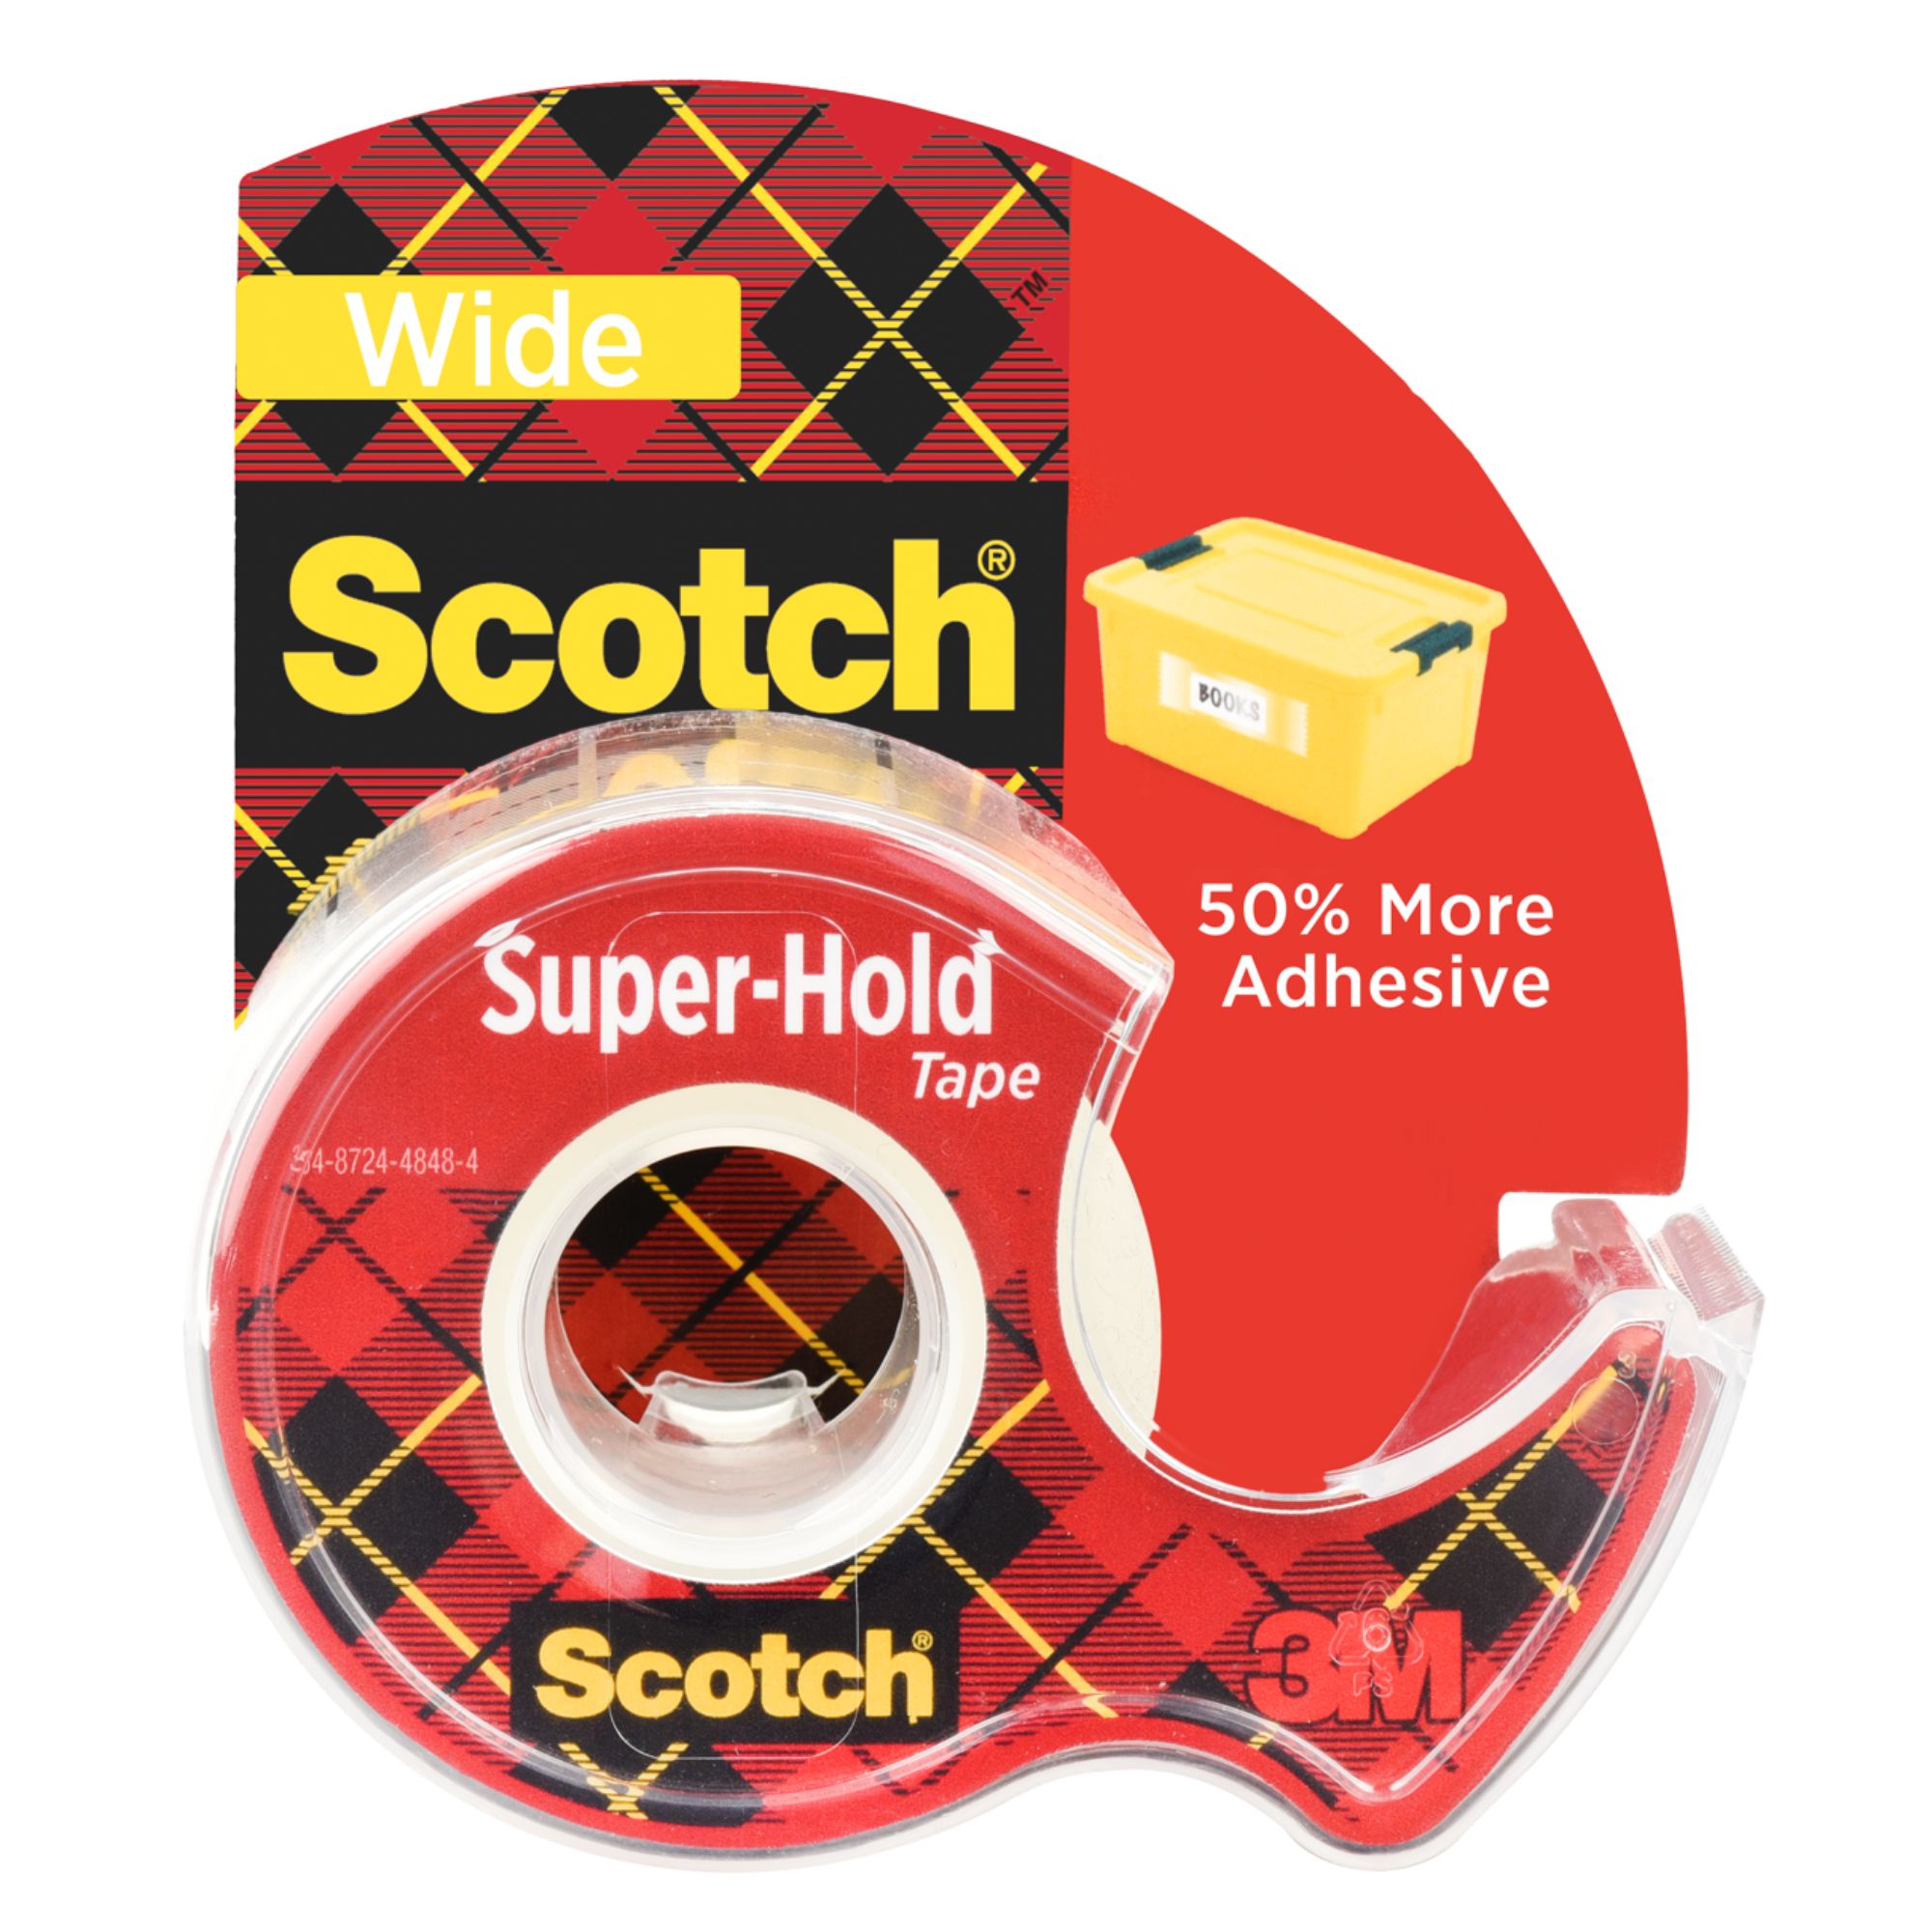 Scotch Super-Hold Tape [Wide]